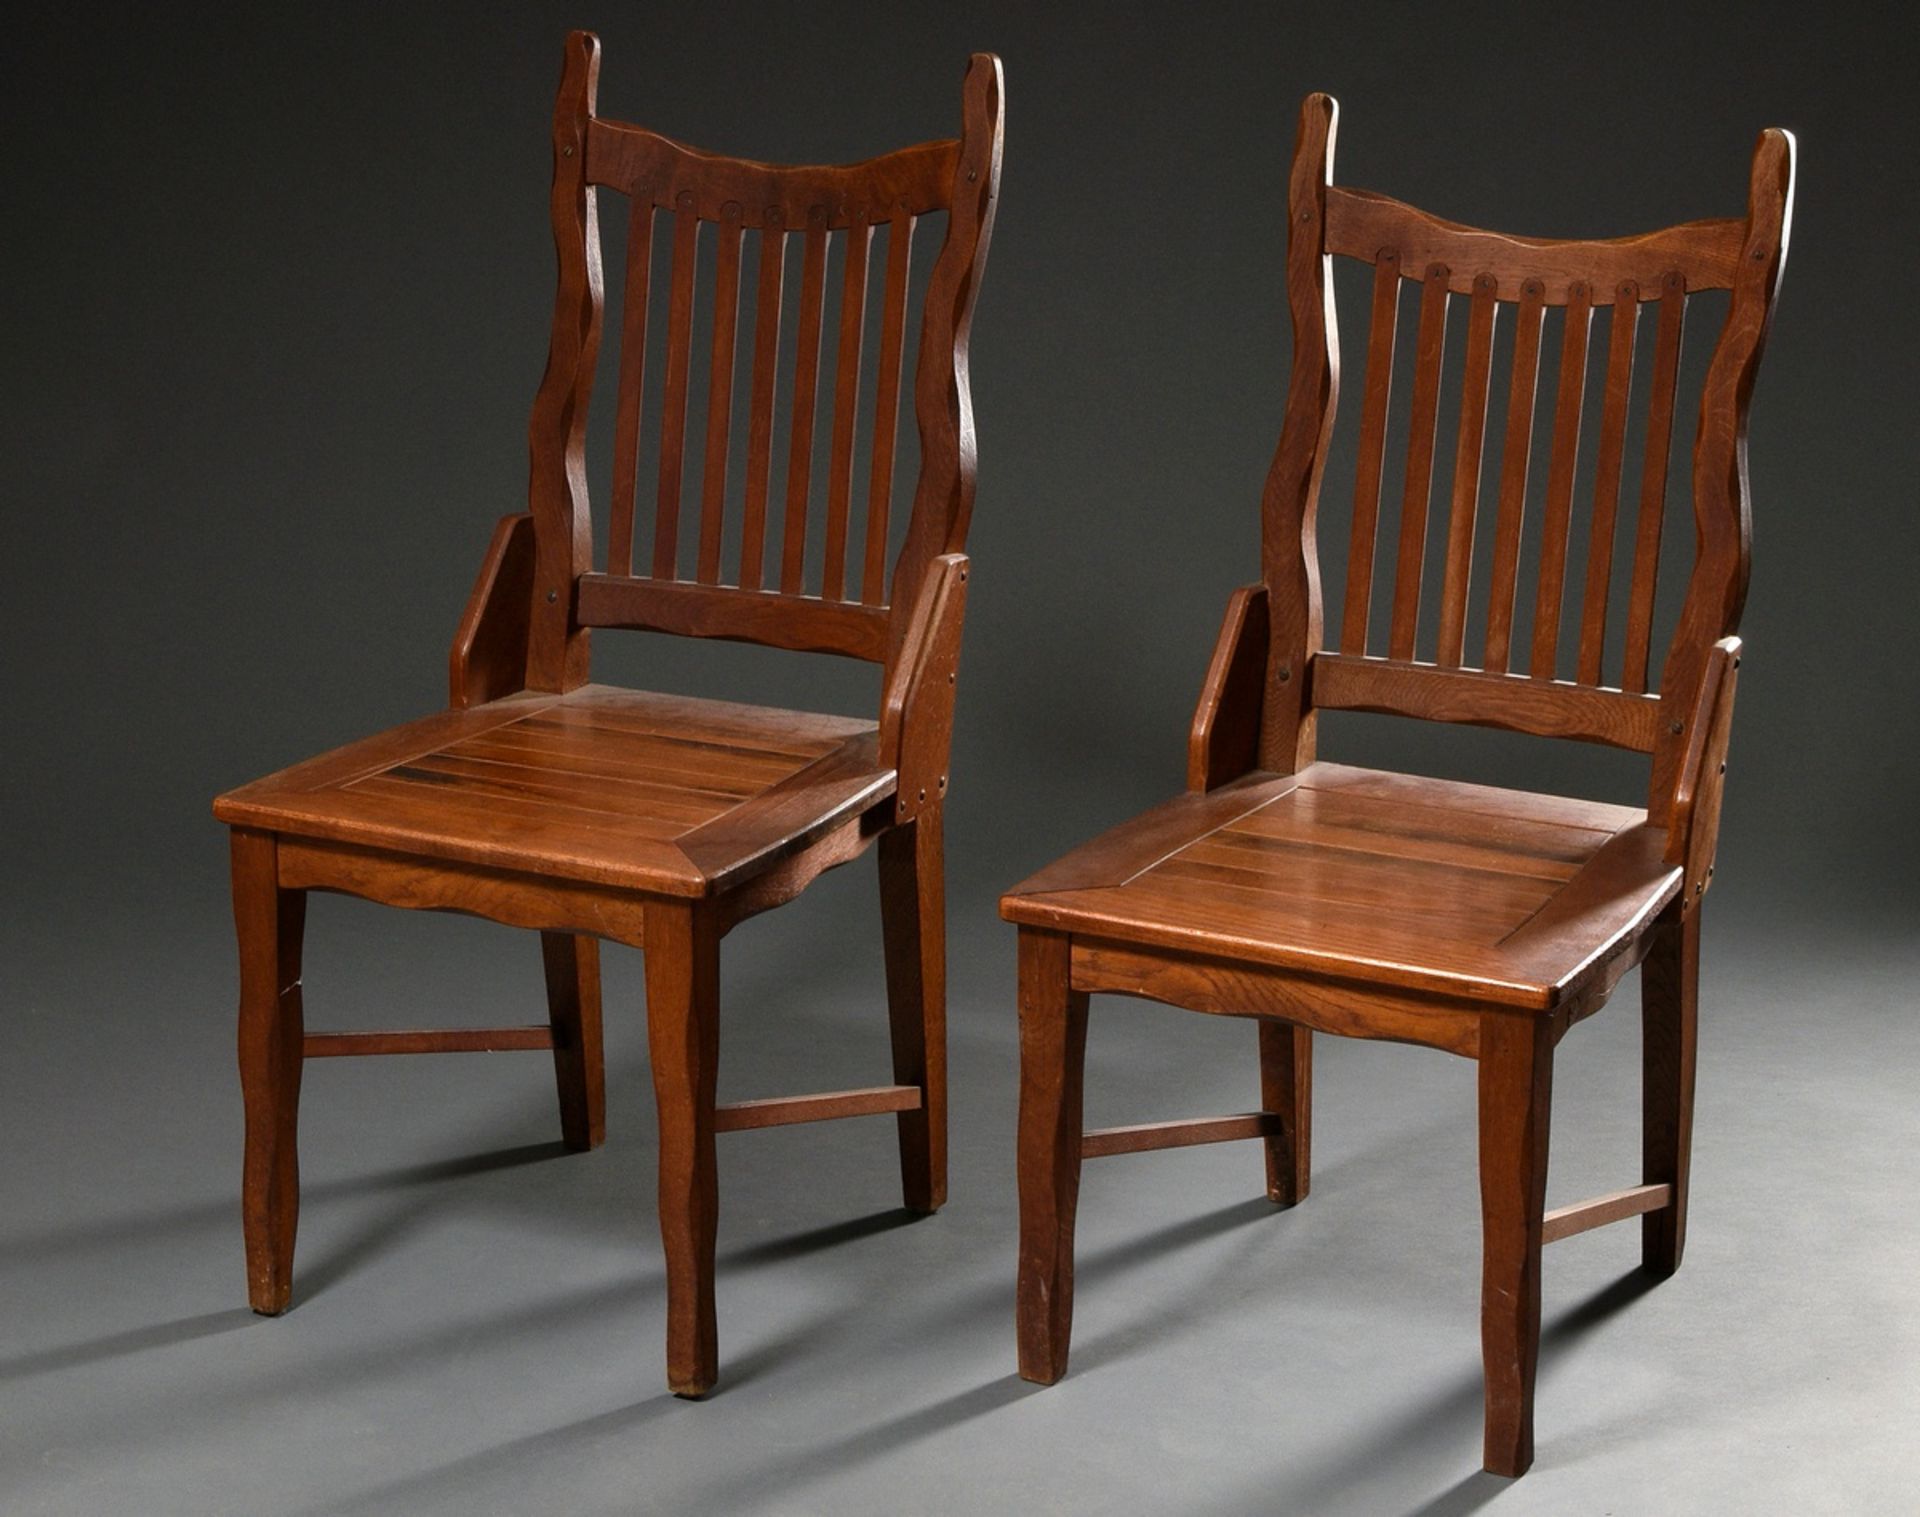 Paar expressionistische Stühle mit geschwungenen Rückenlehnen und geraden Streben sowie parkettiert